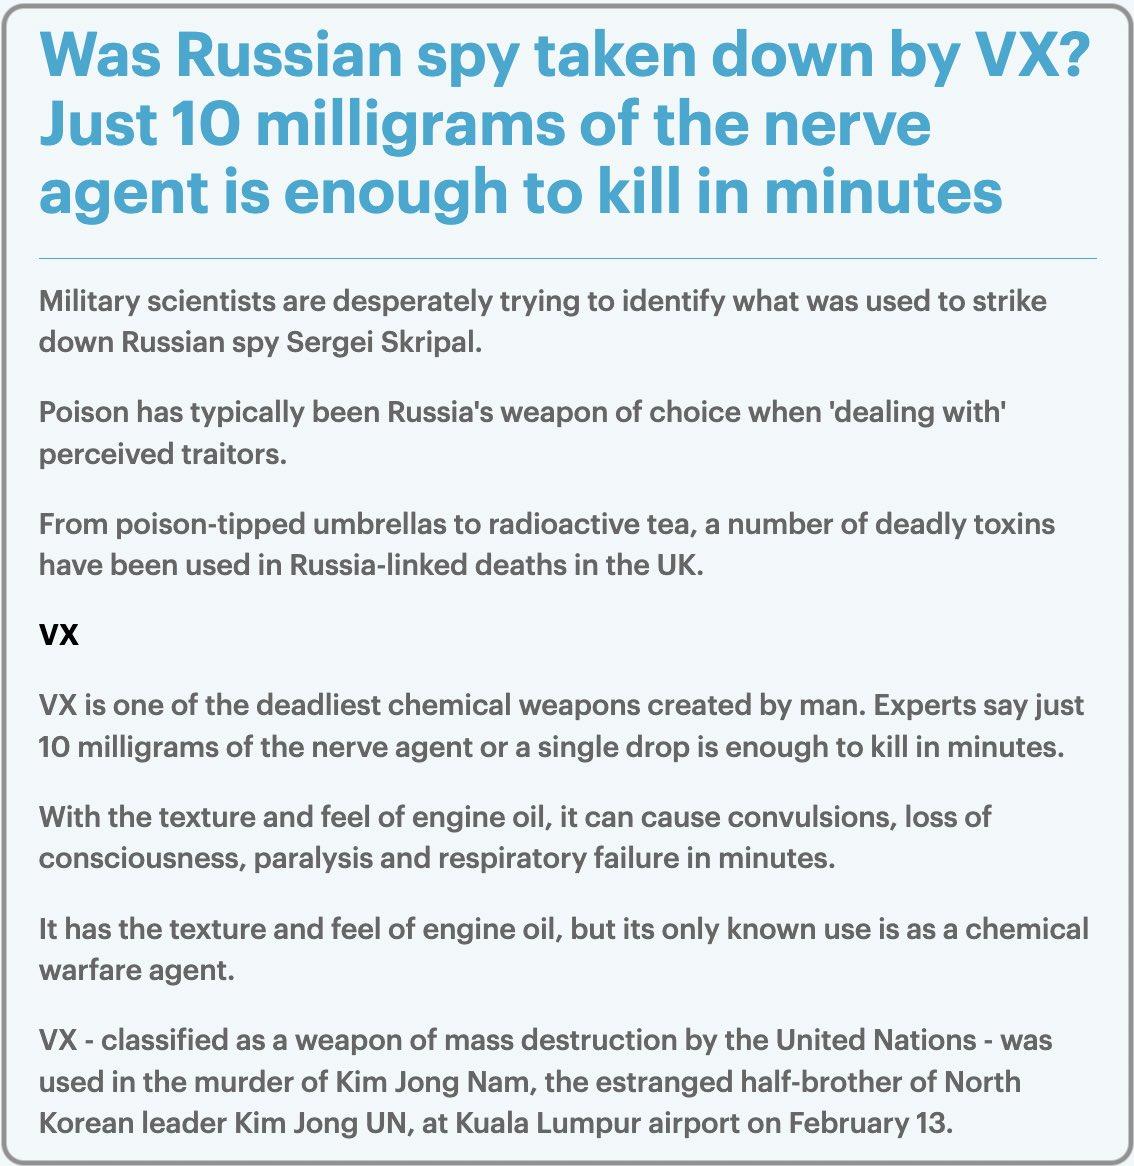 Was Russian spy taken down by VX?